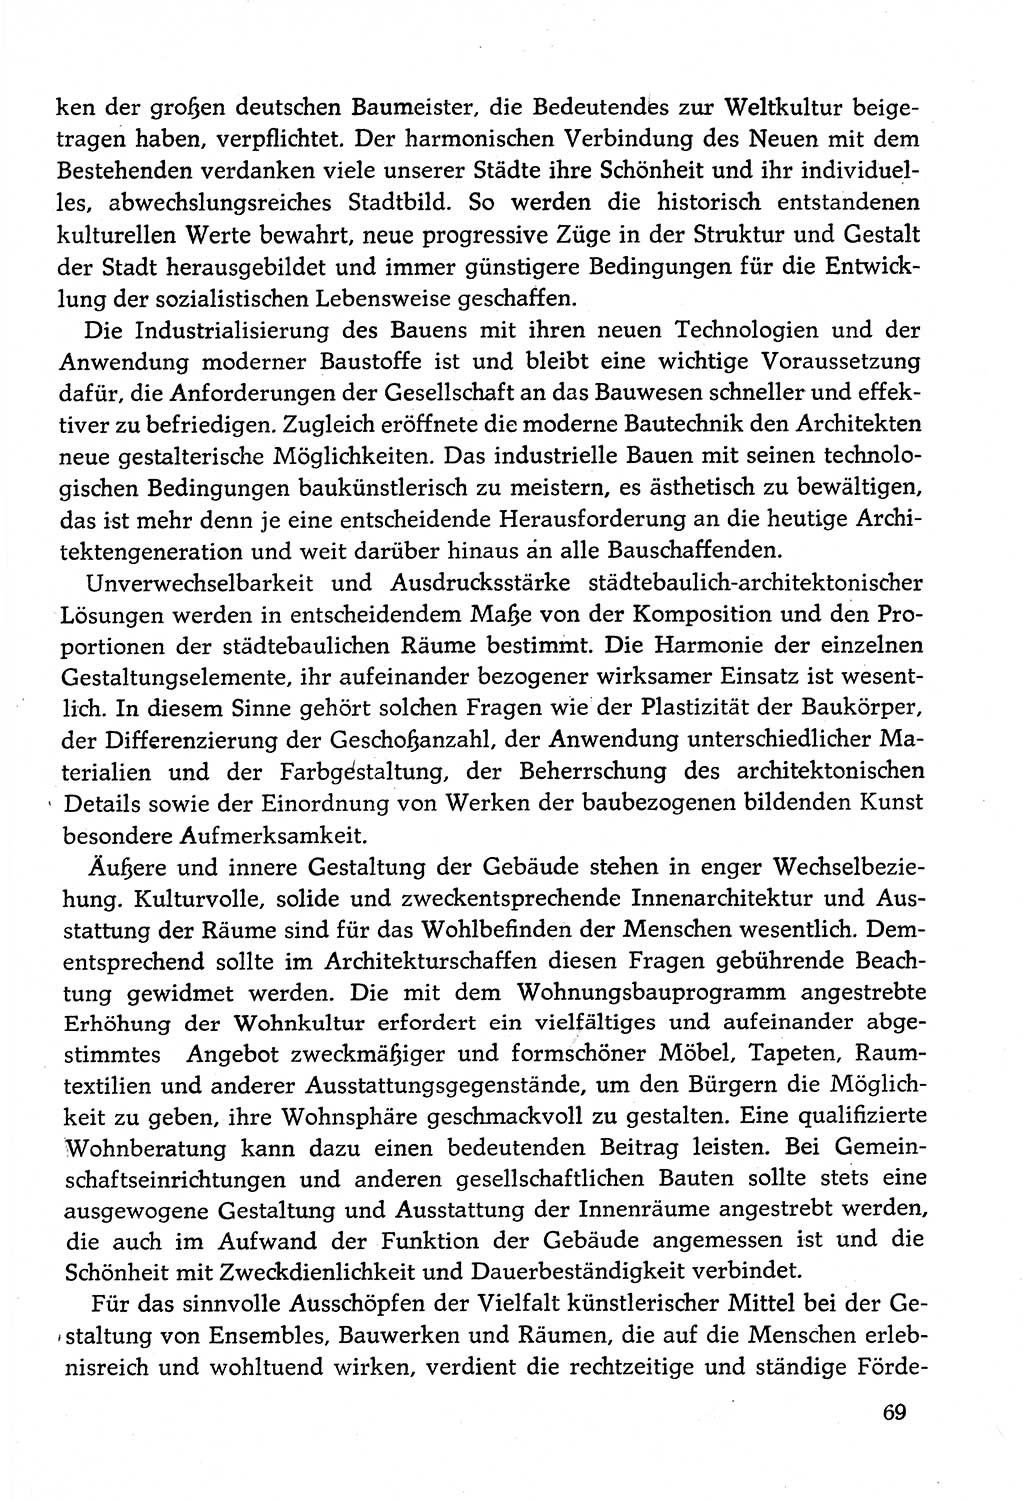 Dokumente der Sozialistischen Einheitspartei Deutschlands (SED) [Deutsche Demokratische Republik (DDR)] 1982-1983, Seite 69 (Dok. SED DDR 1982-1983, S. 69)